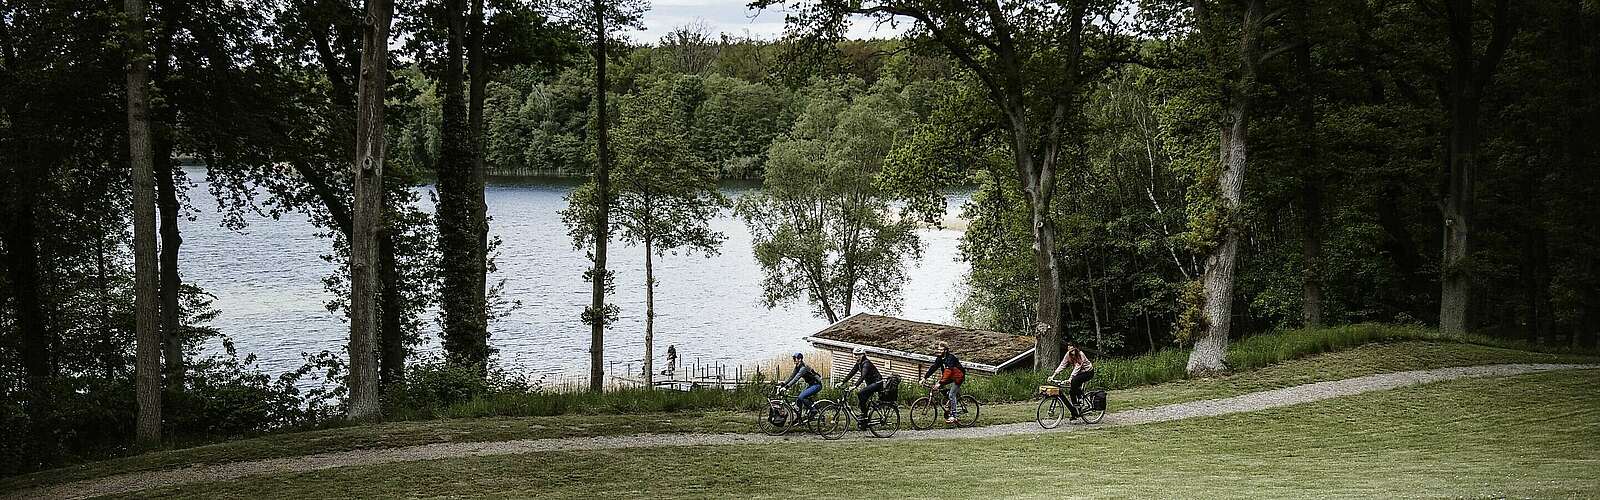 Radfahrer im Park auf Schloss und Gut Liebenberg,
        
    

        Foto: Fotograf / Lizenz - Media Import/Madlen Krippendorf